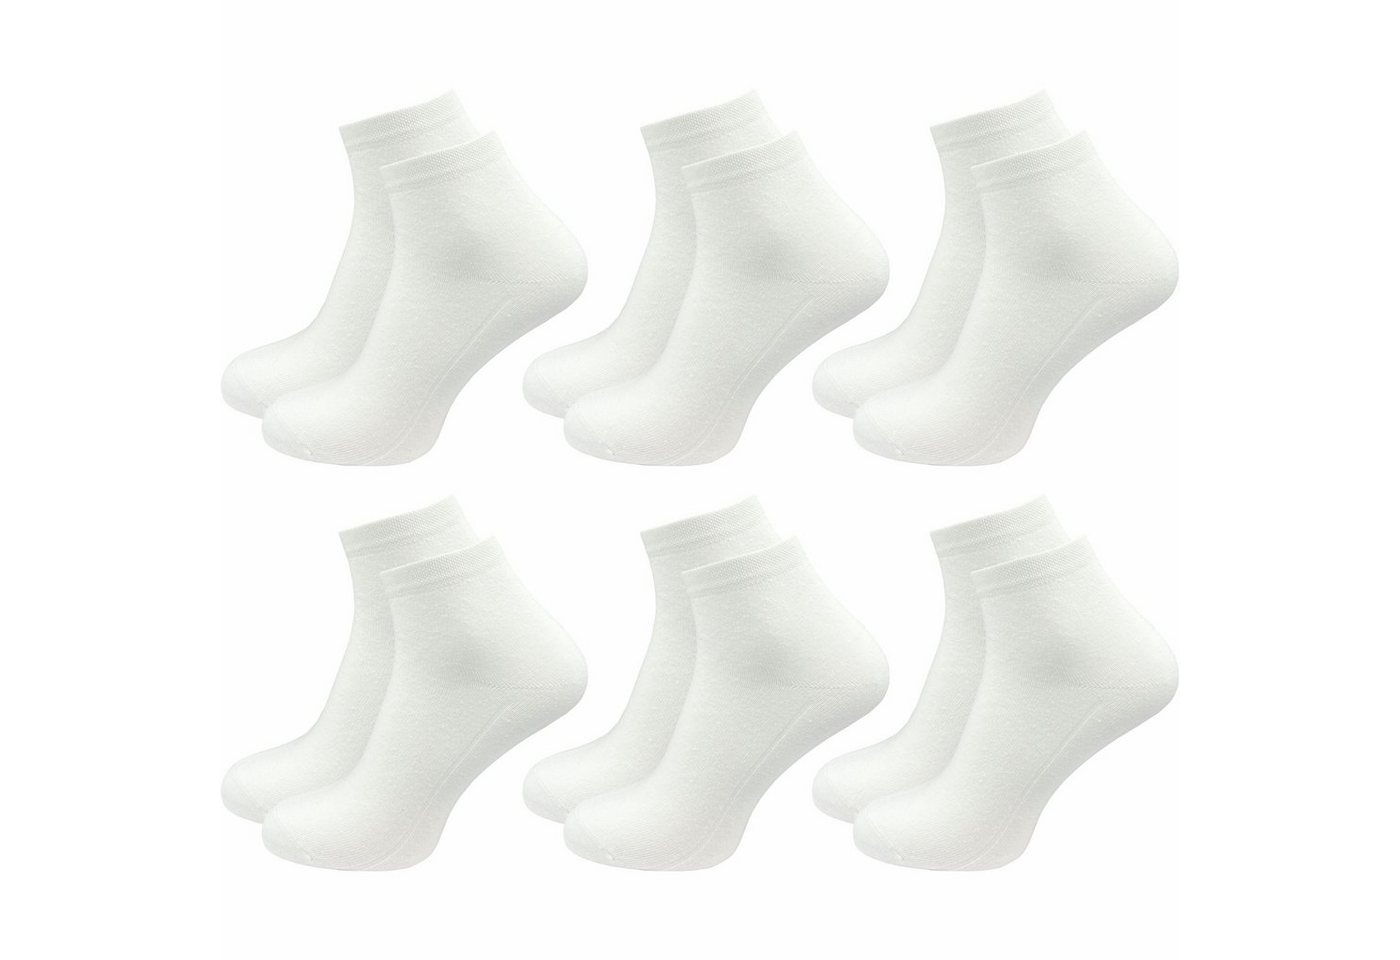 GAWILO Kurzsocken für Herren, Quartersocken in schwarz & weiß - ohne drückende Naht (6 Paar) Schaft etwas länger als bei einer Sneaker Socke, daher kein rutschen von GAWILO